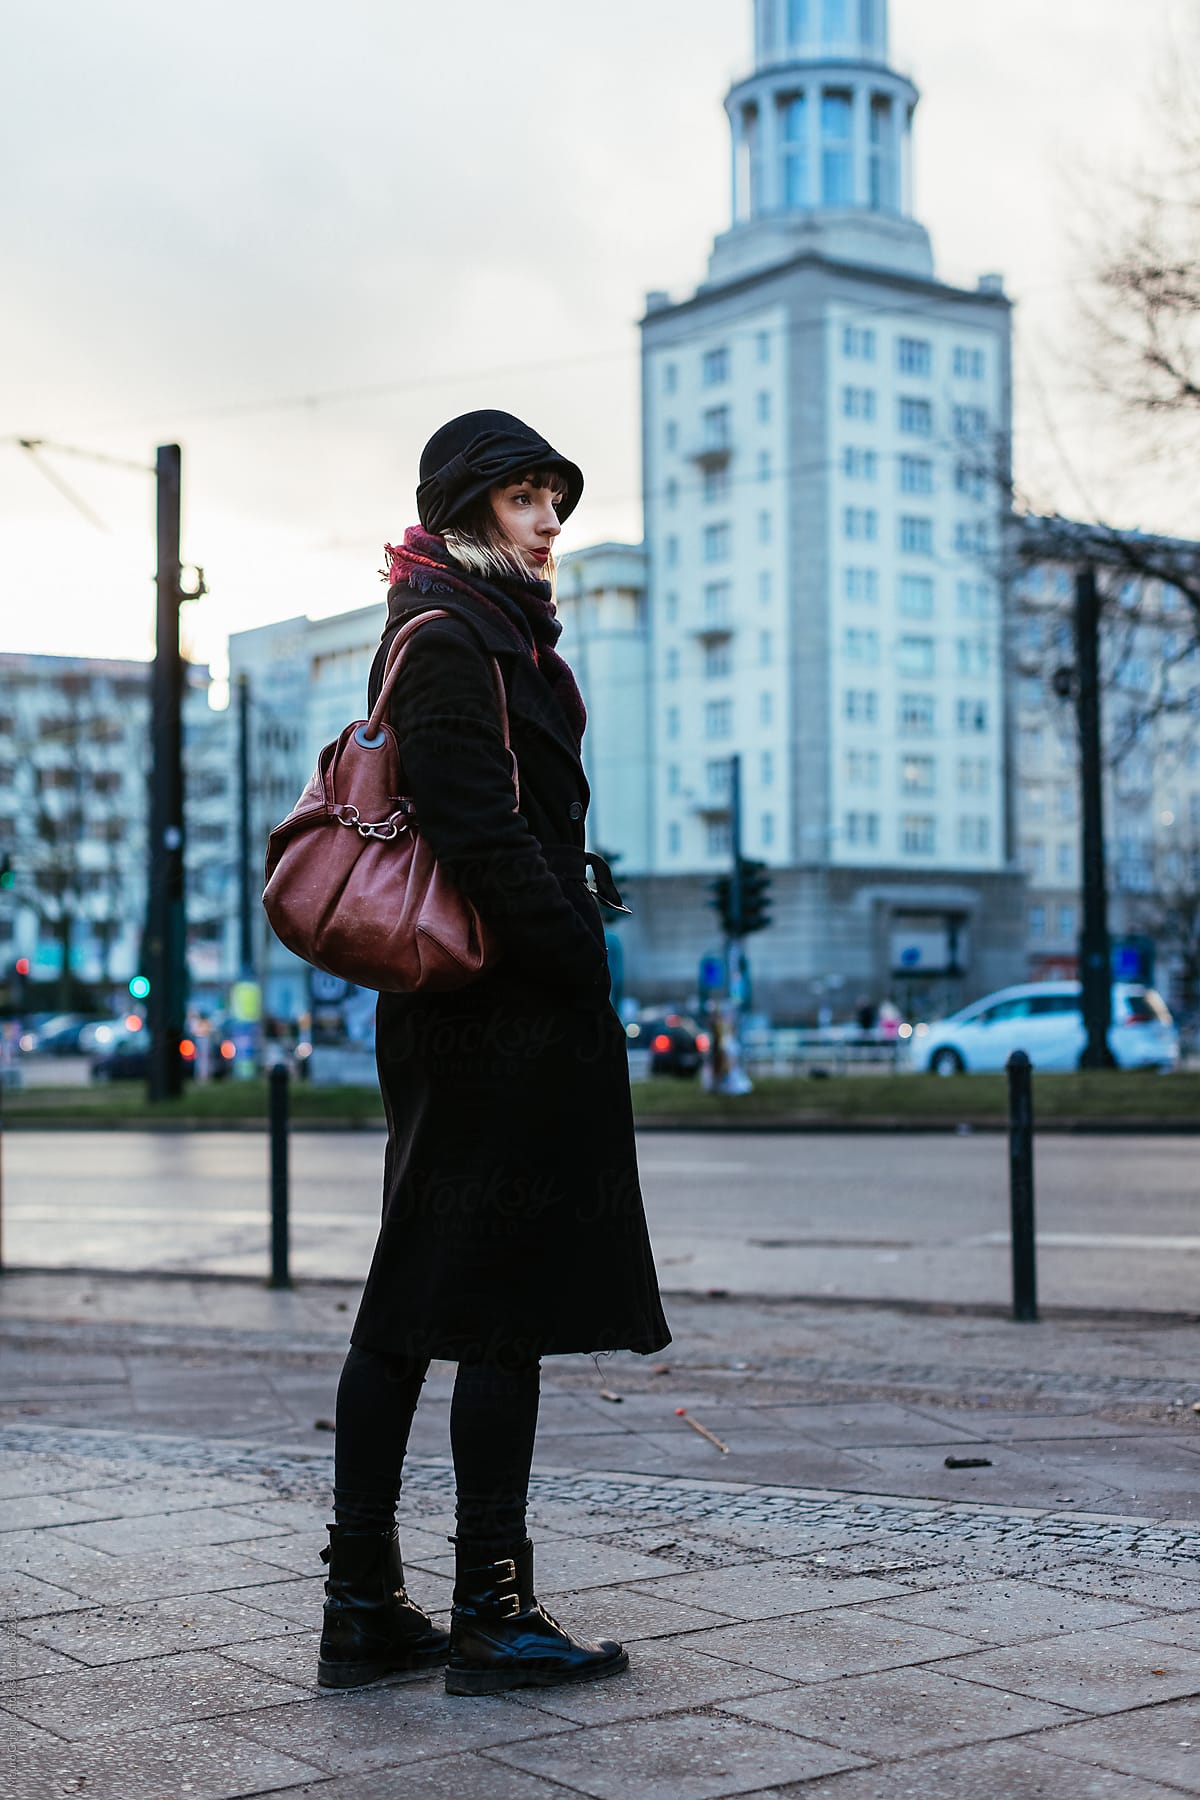 Woman walking in the city in winter